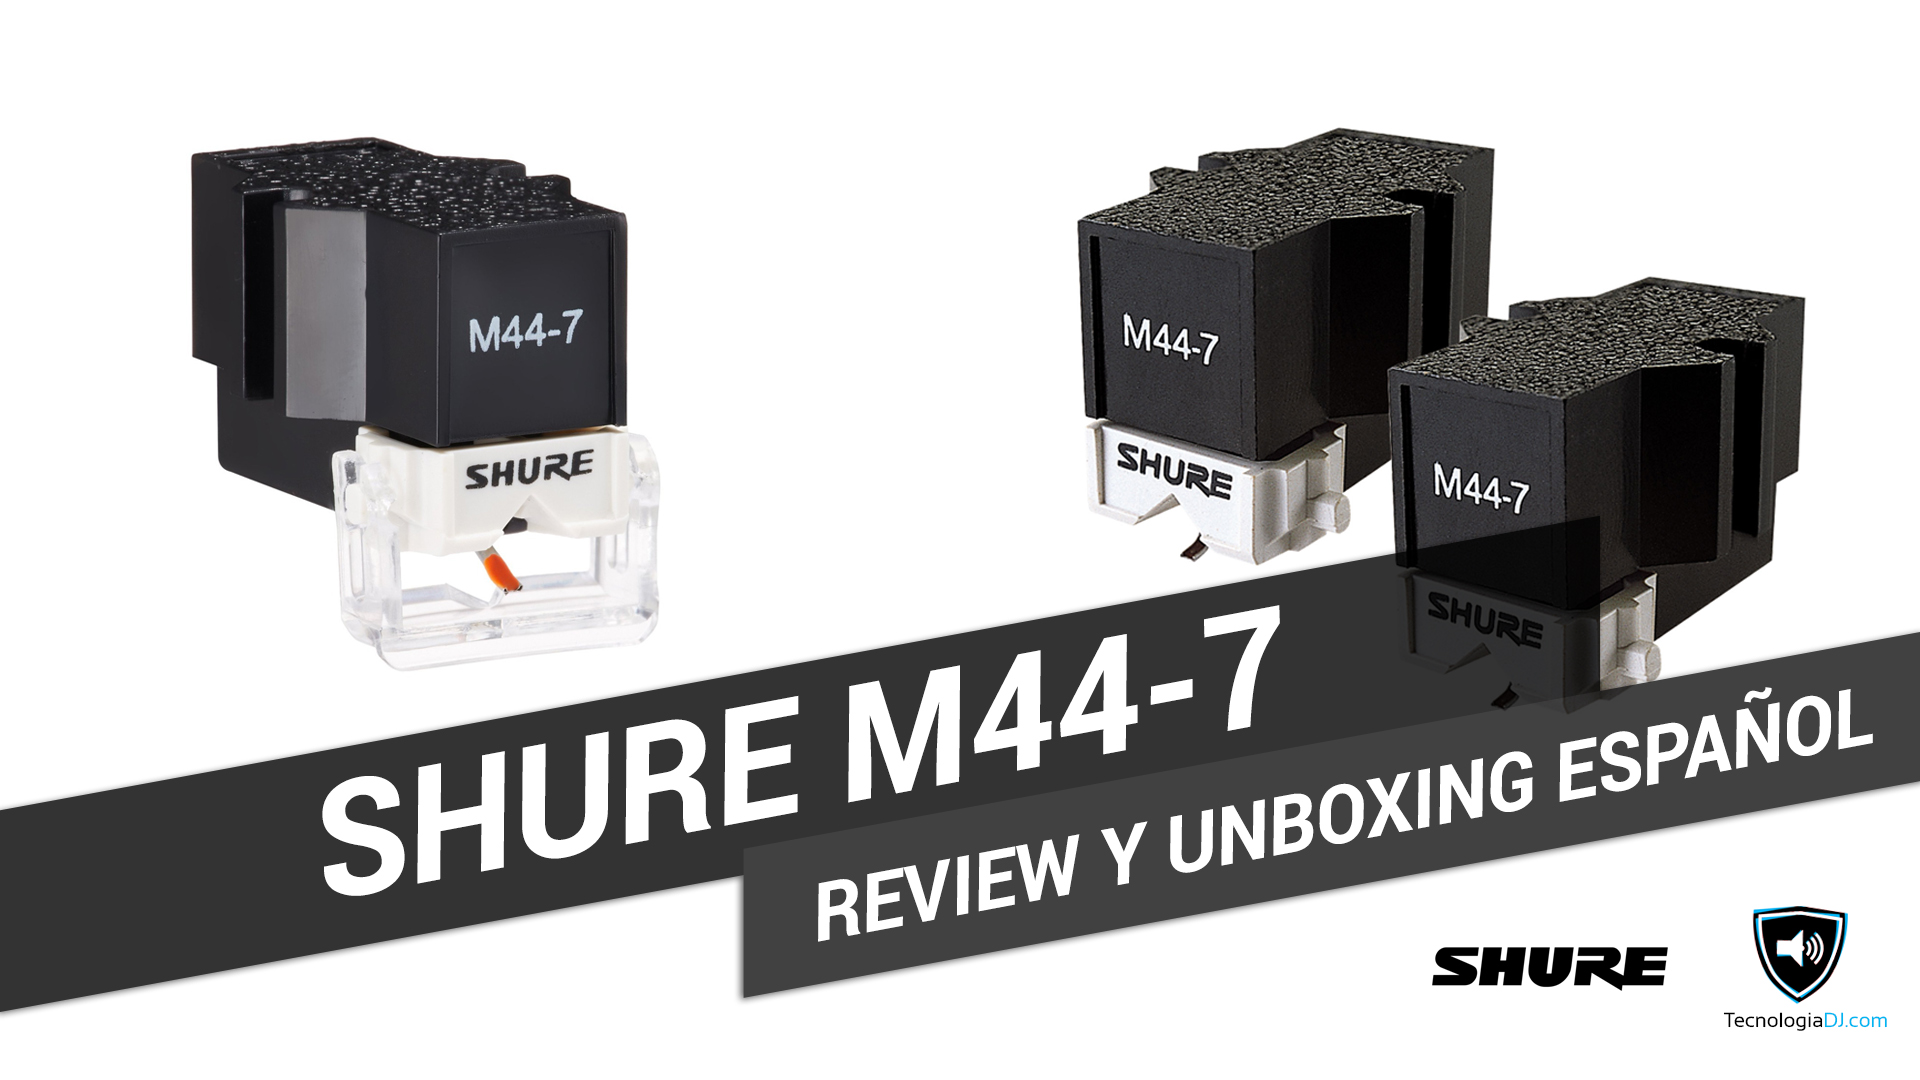 Review y unboxing en español aguja Shure M44-7